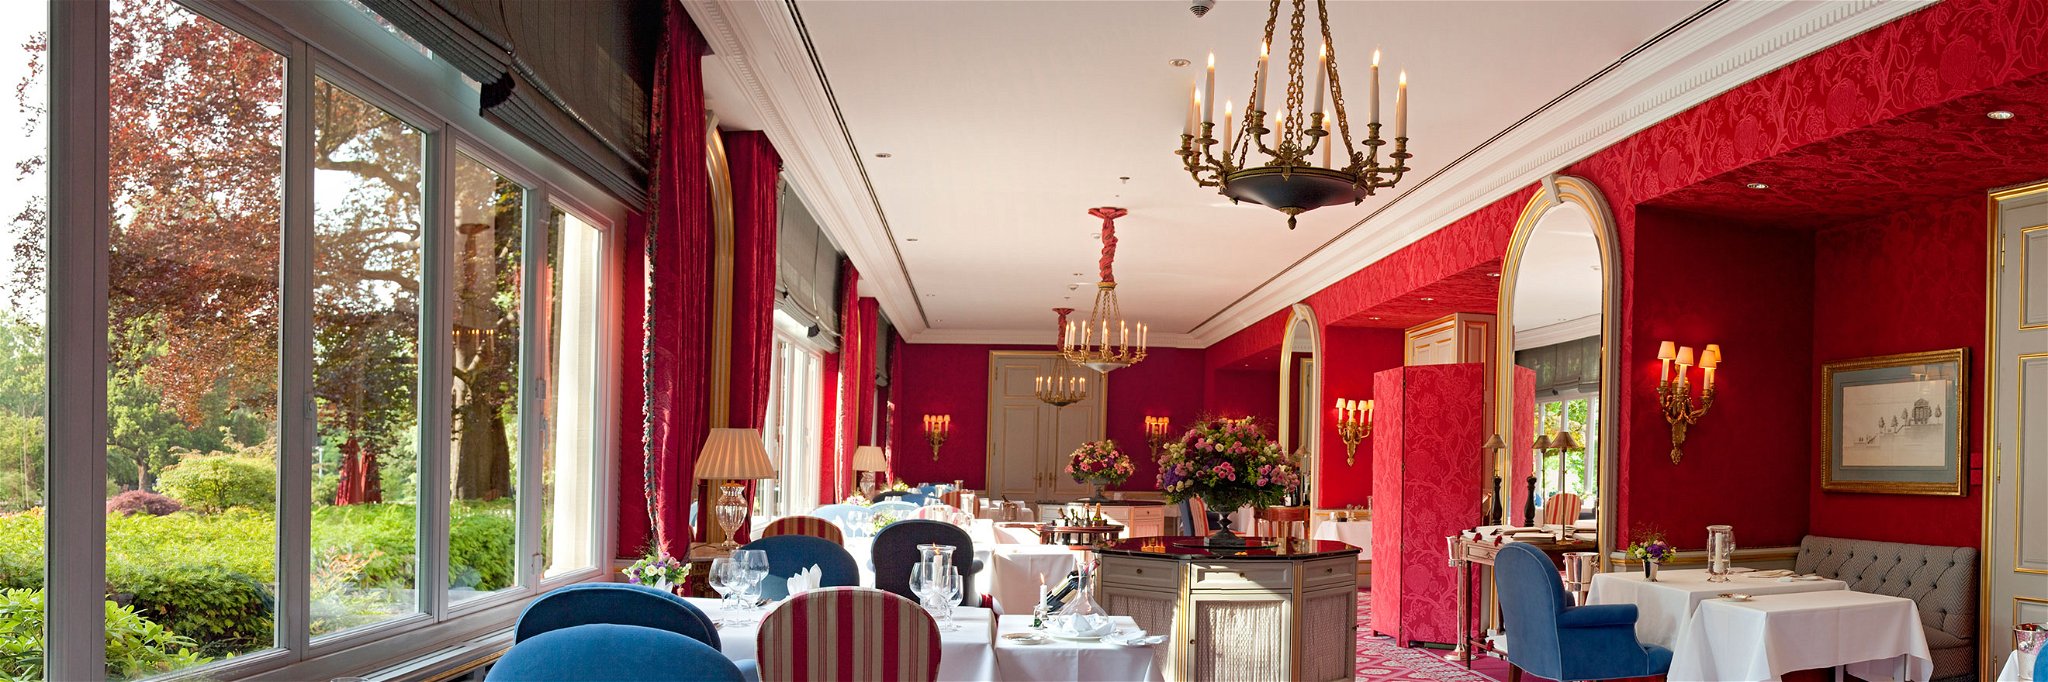 Das Spitzenrestaurant des Brenners Park Hotel soll erst 2018 wieder eröffnen.